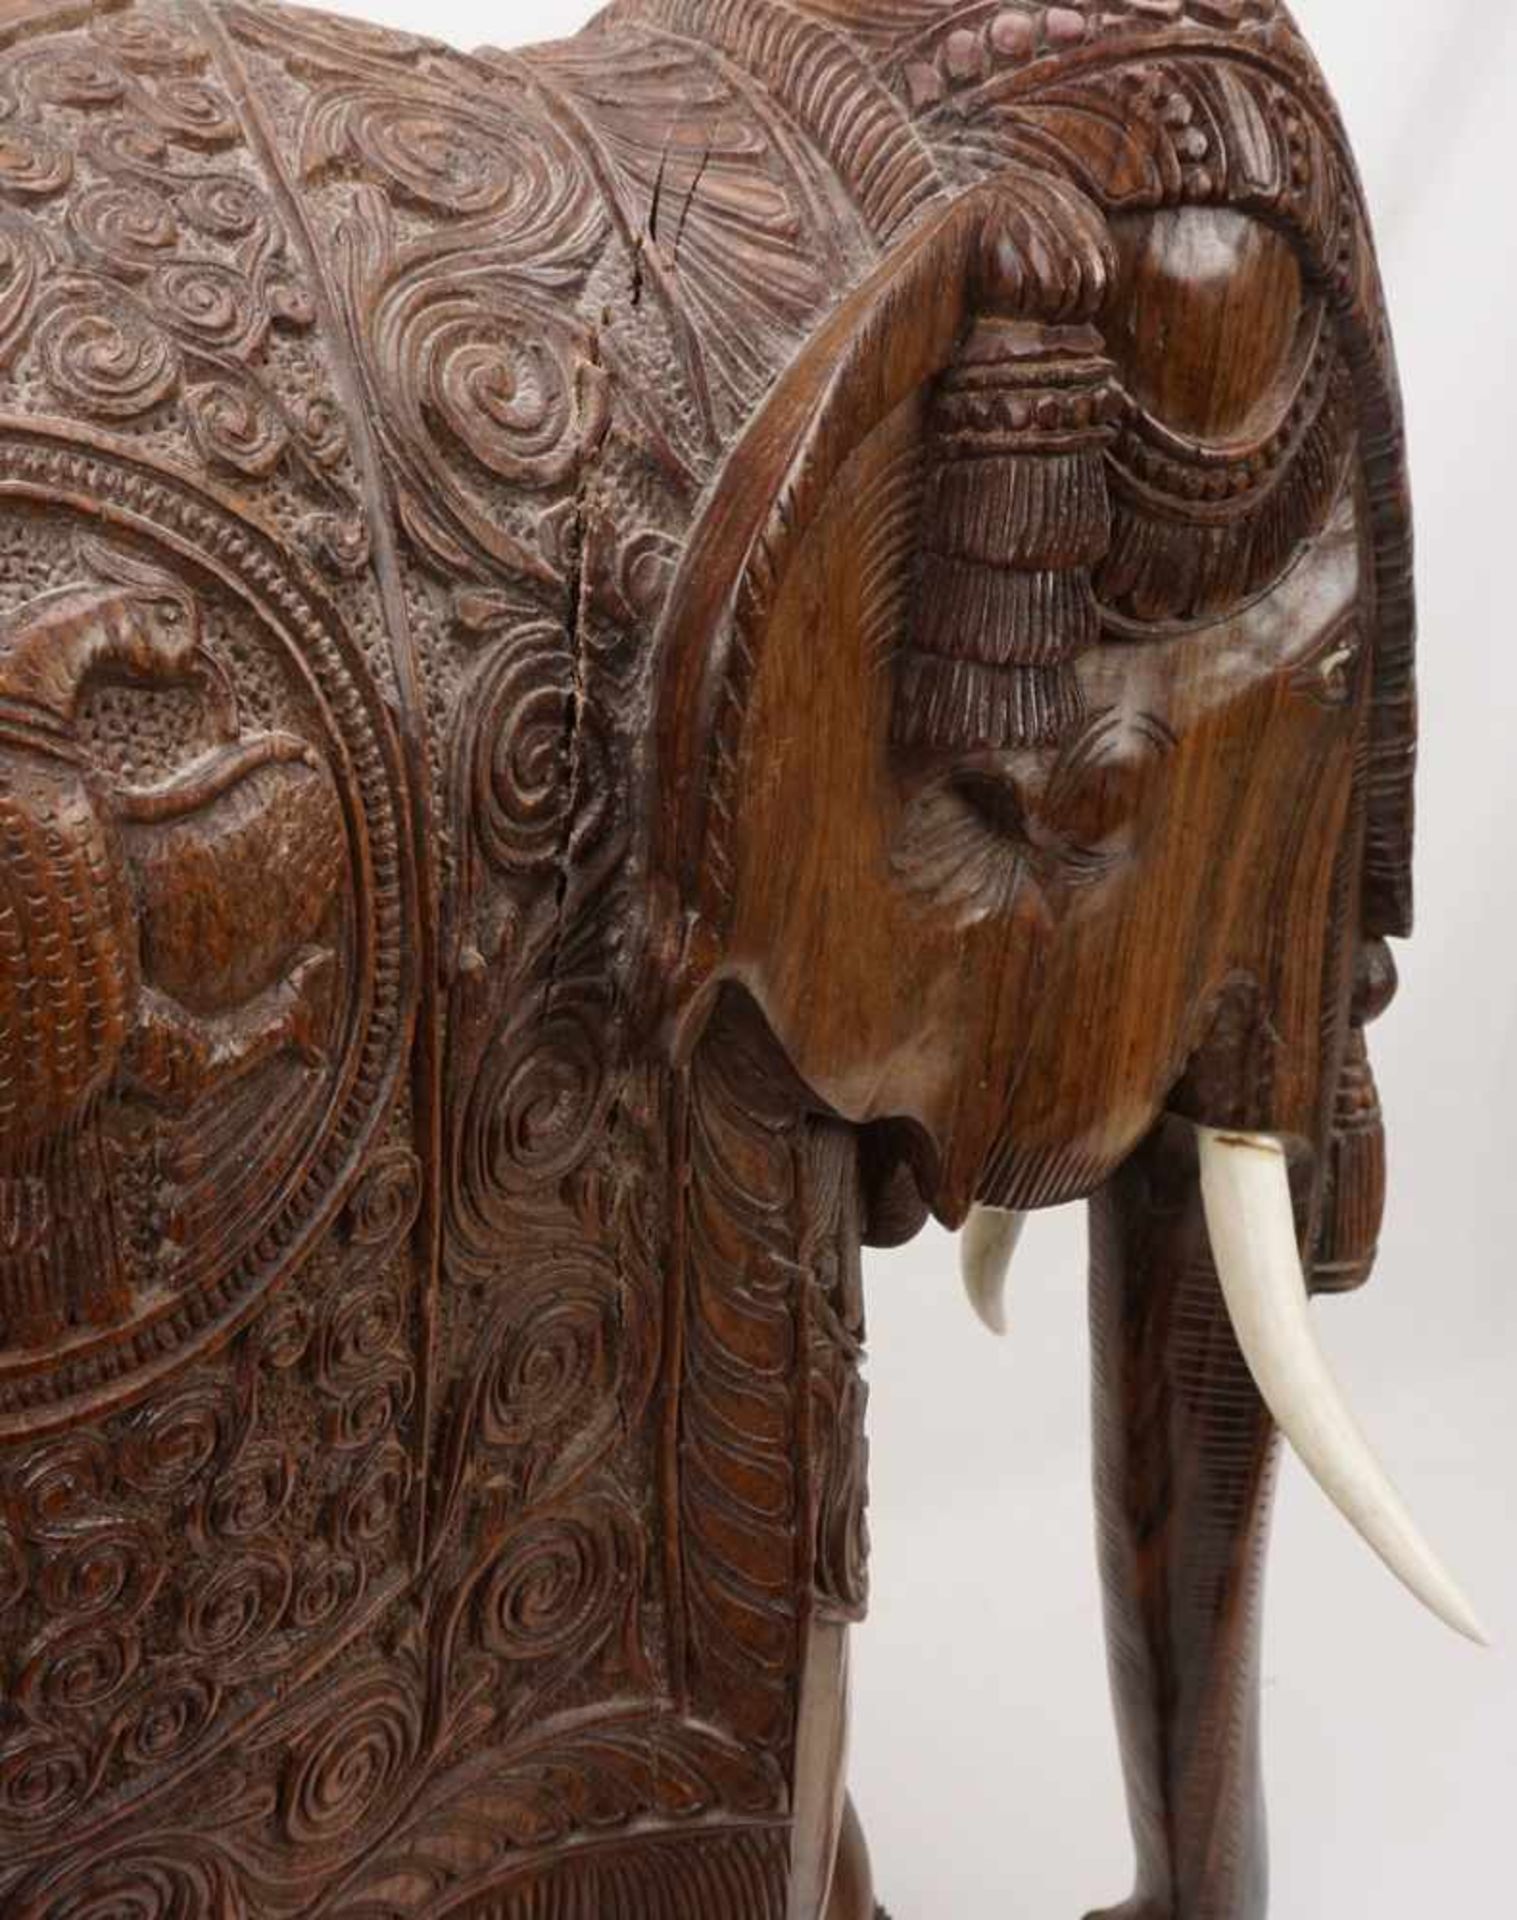 Großer Elefant, Indien, 20. Jh.Palisander, prächtig ausgeschmückter Elefant mit Stoßzähnen aus Bein, - Bild 3 aus 6